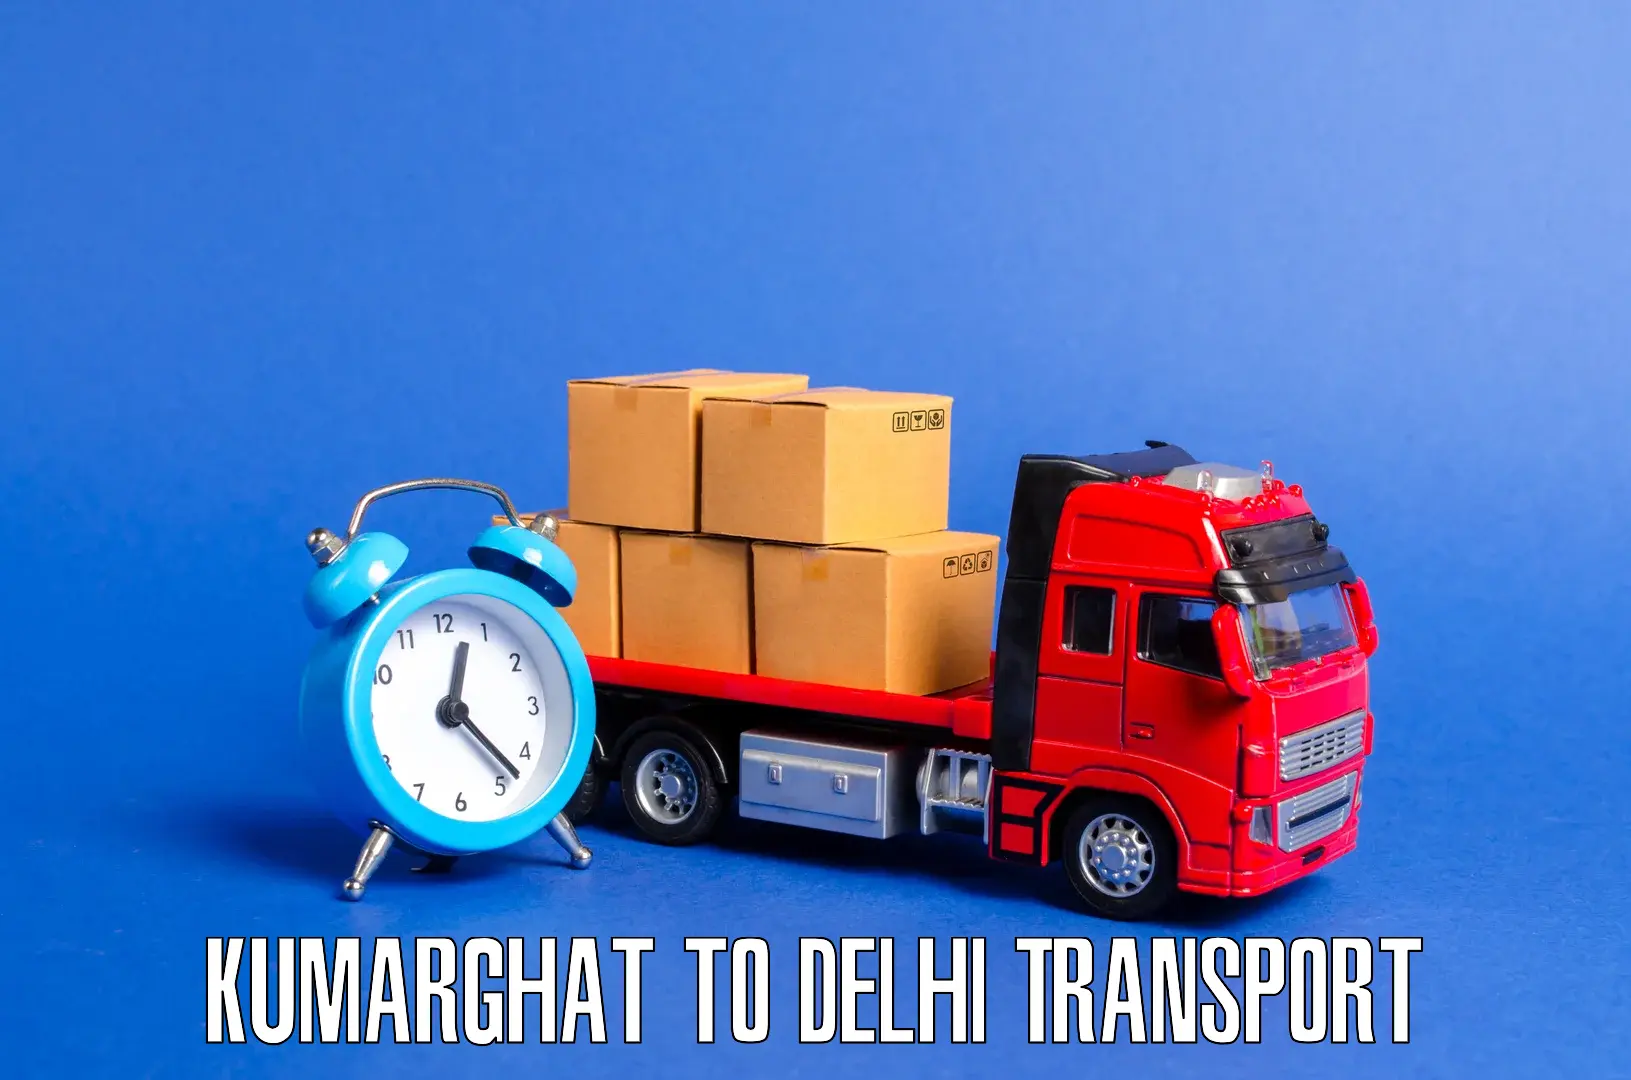 Shipping partner Kumarghat to University of Delhi